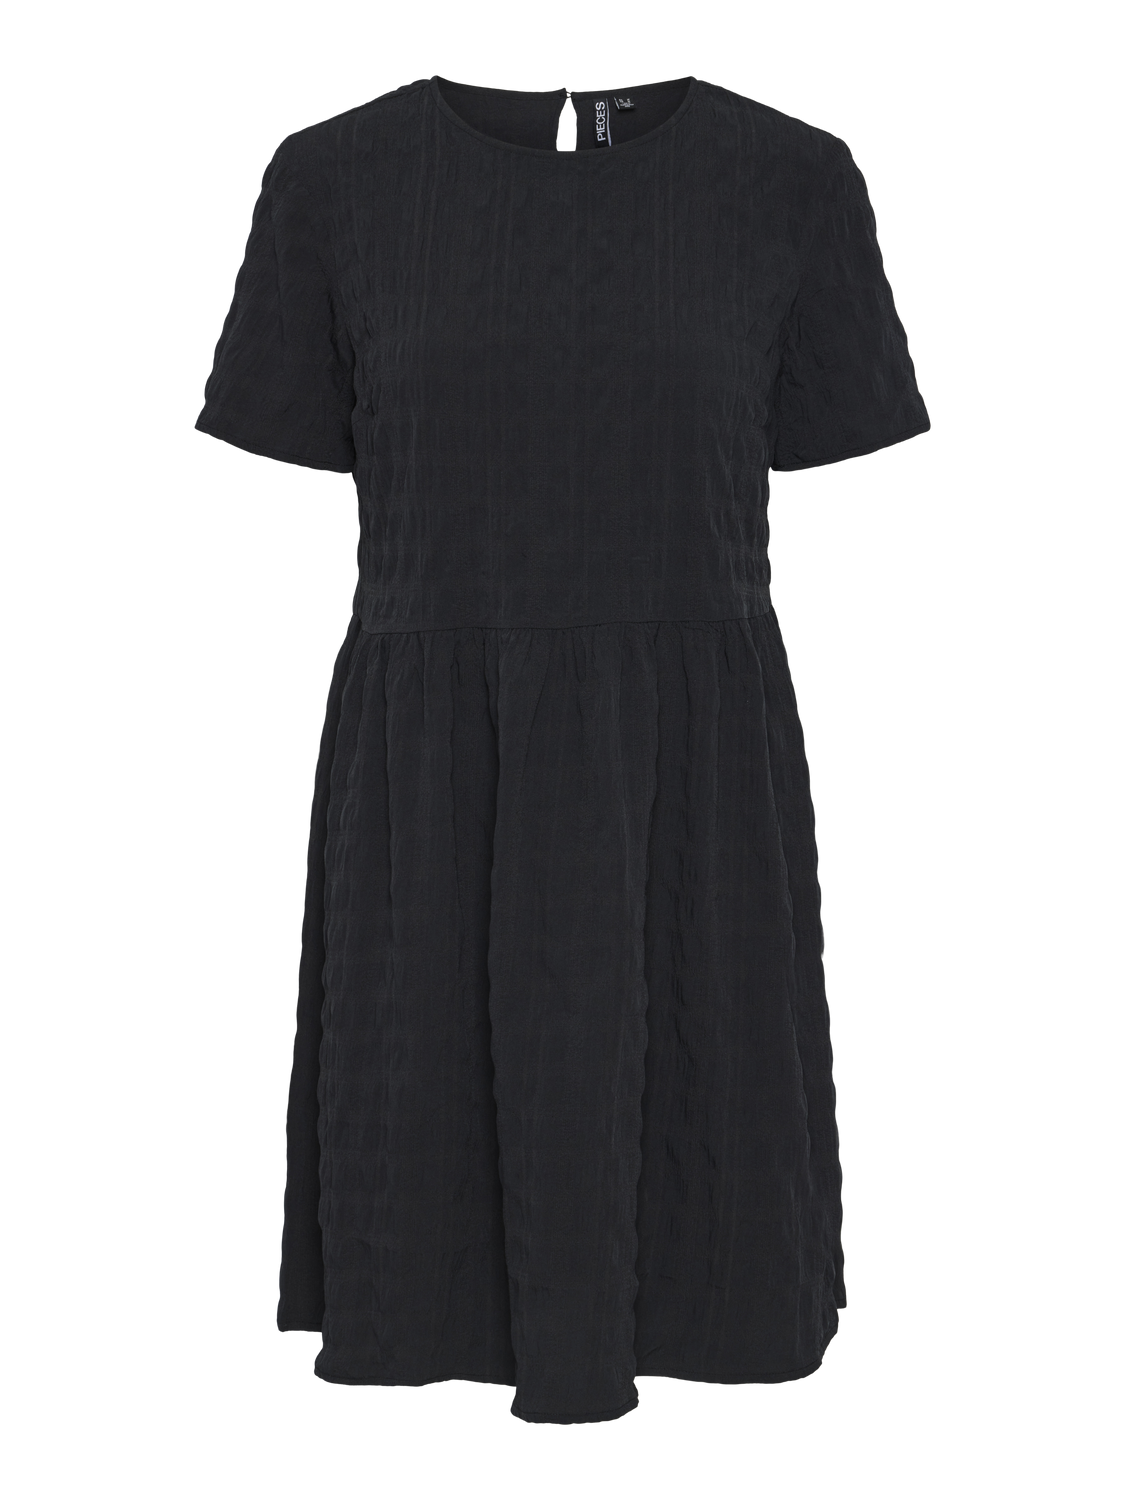 PCSYLVIA Dress - Black